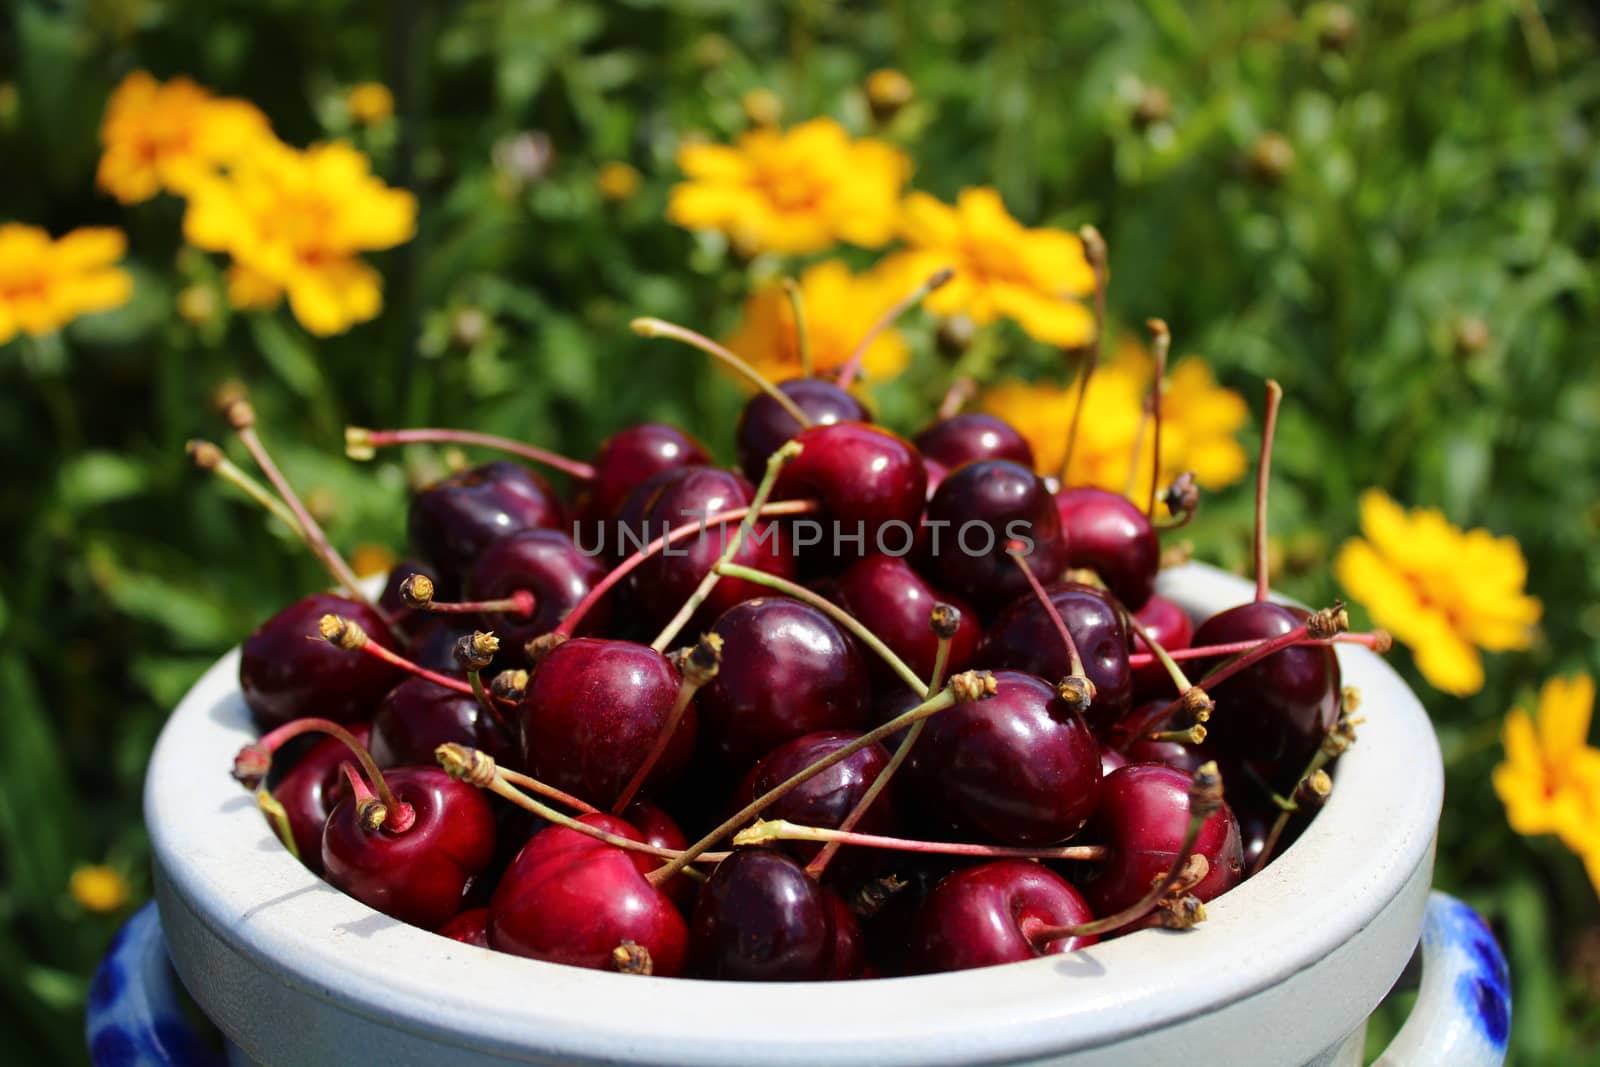 harvested cherries in the garden by martina_unbehauen